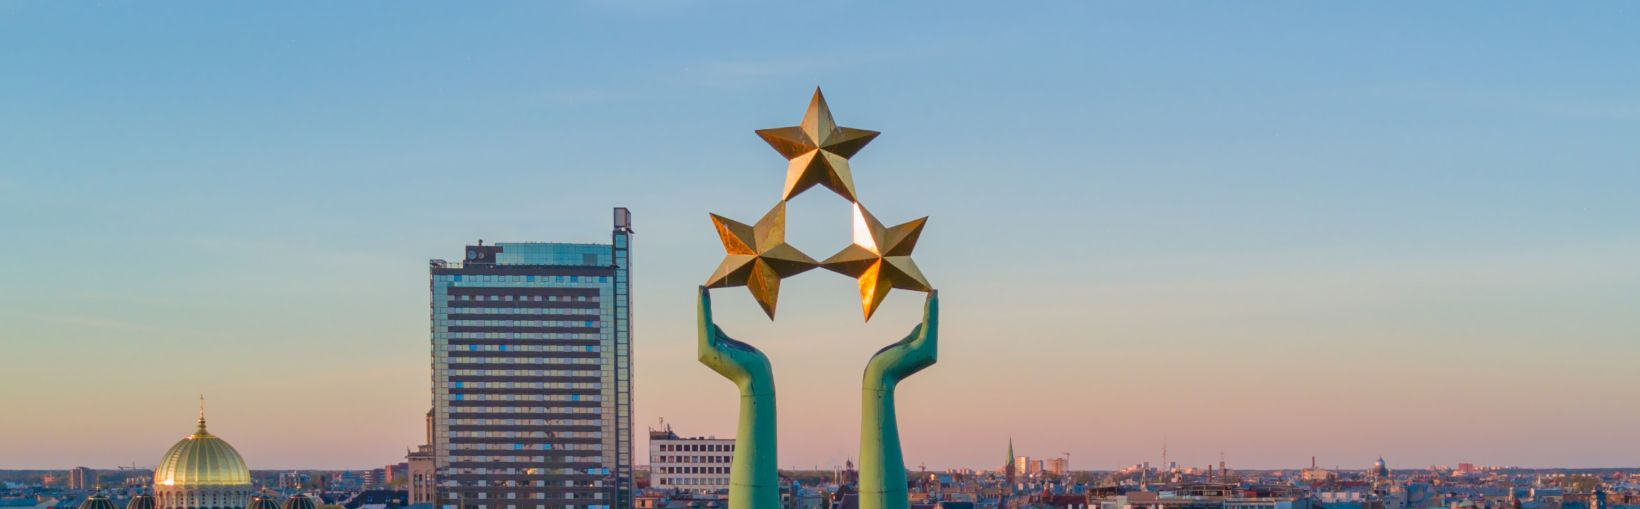 Smuk solnedgang i Riga ved frihedsstatuen kendt som Milda. Frihed i Letland. Frihedsstatuen holder tre stjerner over byen.